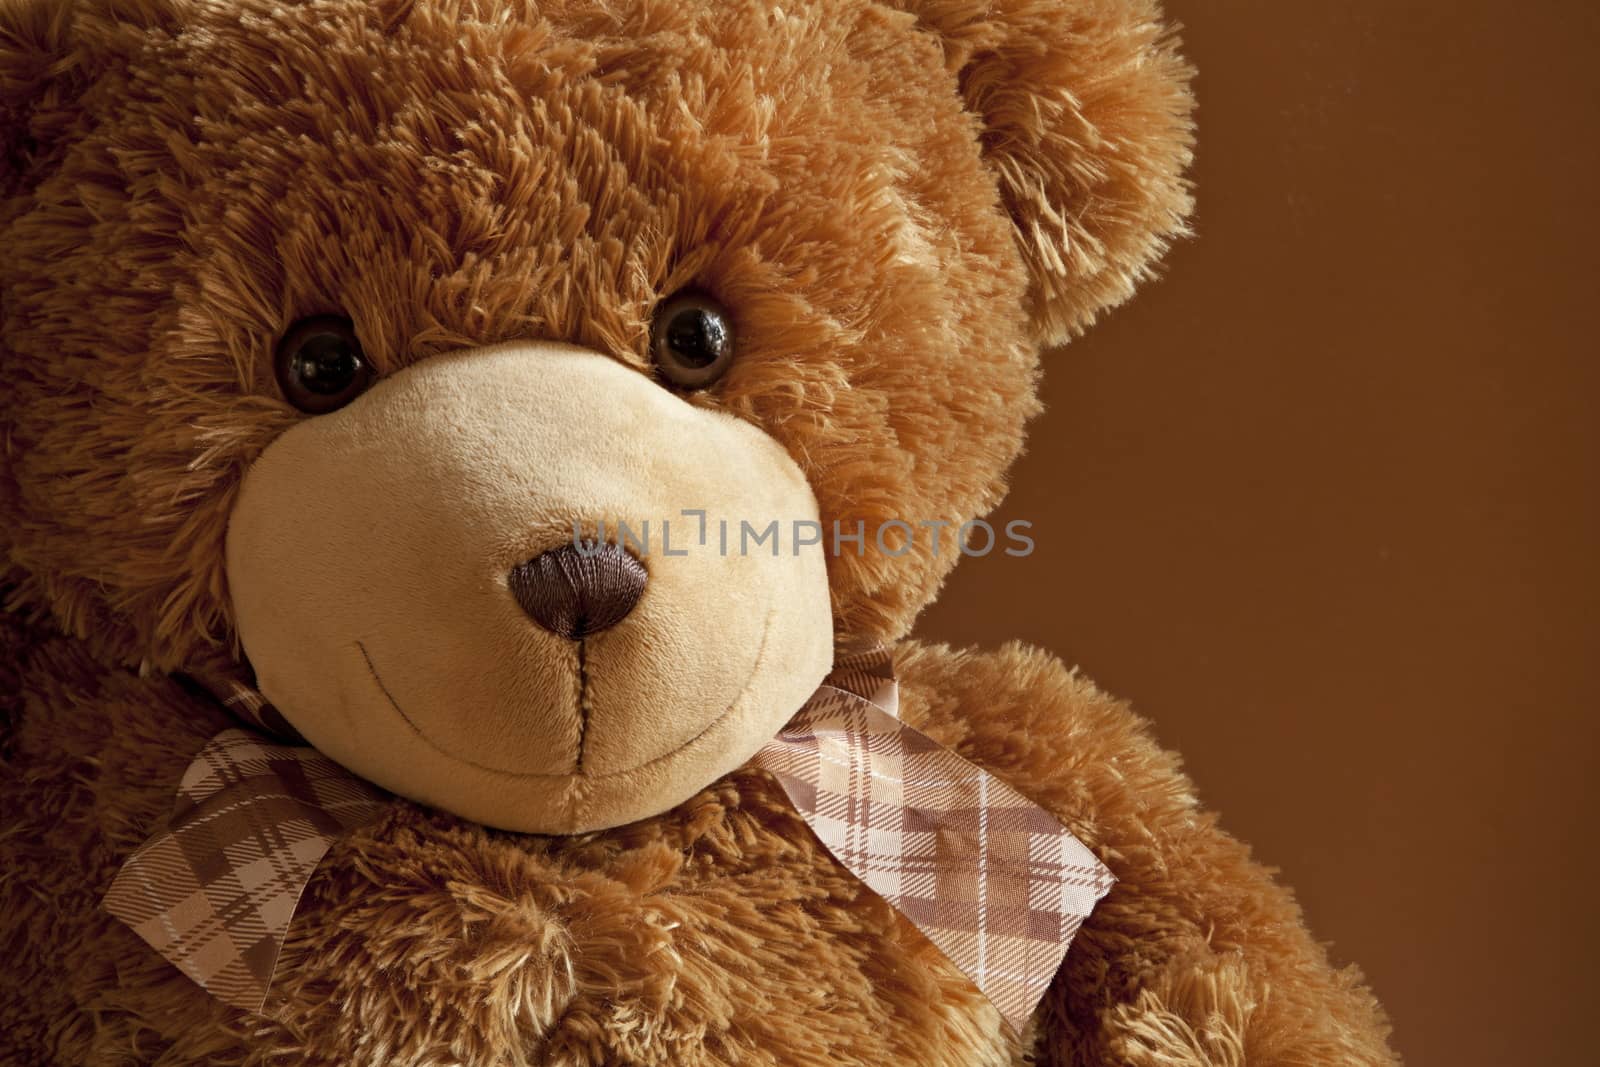 Cheerful Kind friend plush teddy bear cute toy